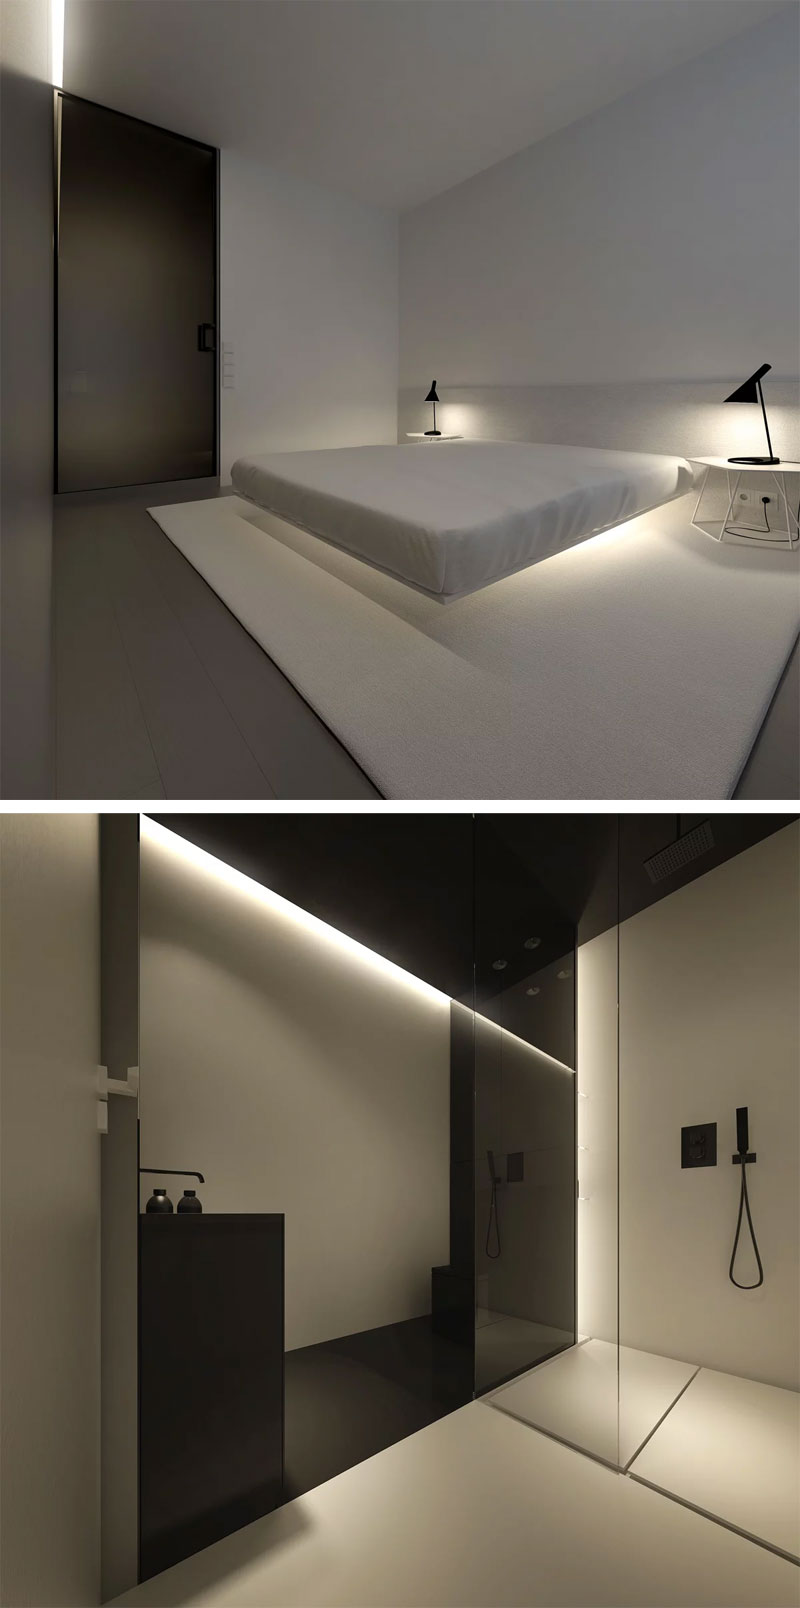 Oporski Architektura heeft deze minimalistische slaapkamer ontworpen, met een luxe ensuite badkamer in dezelfde stijl.